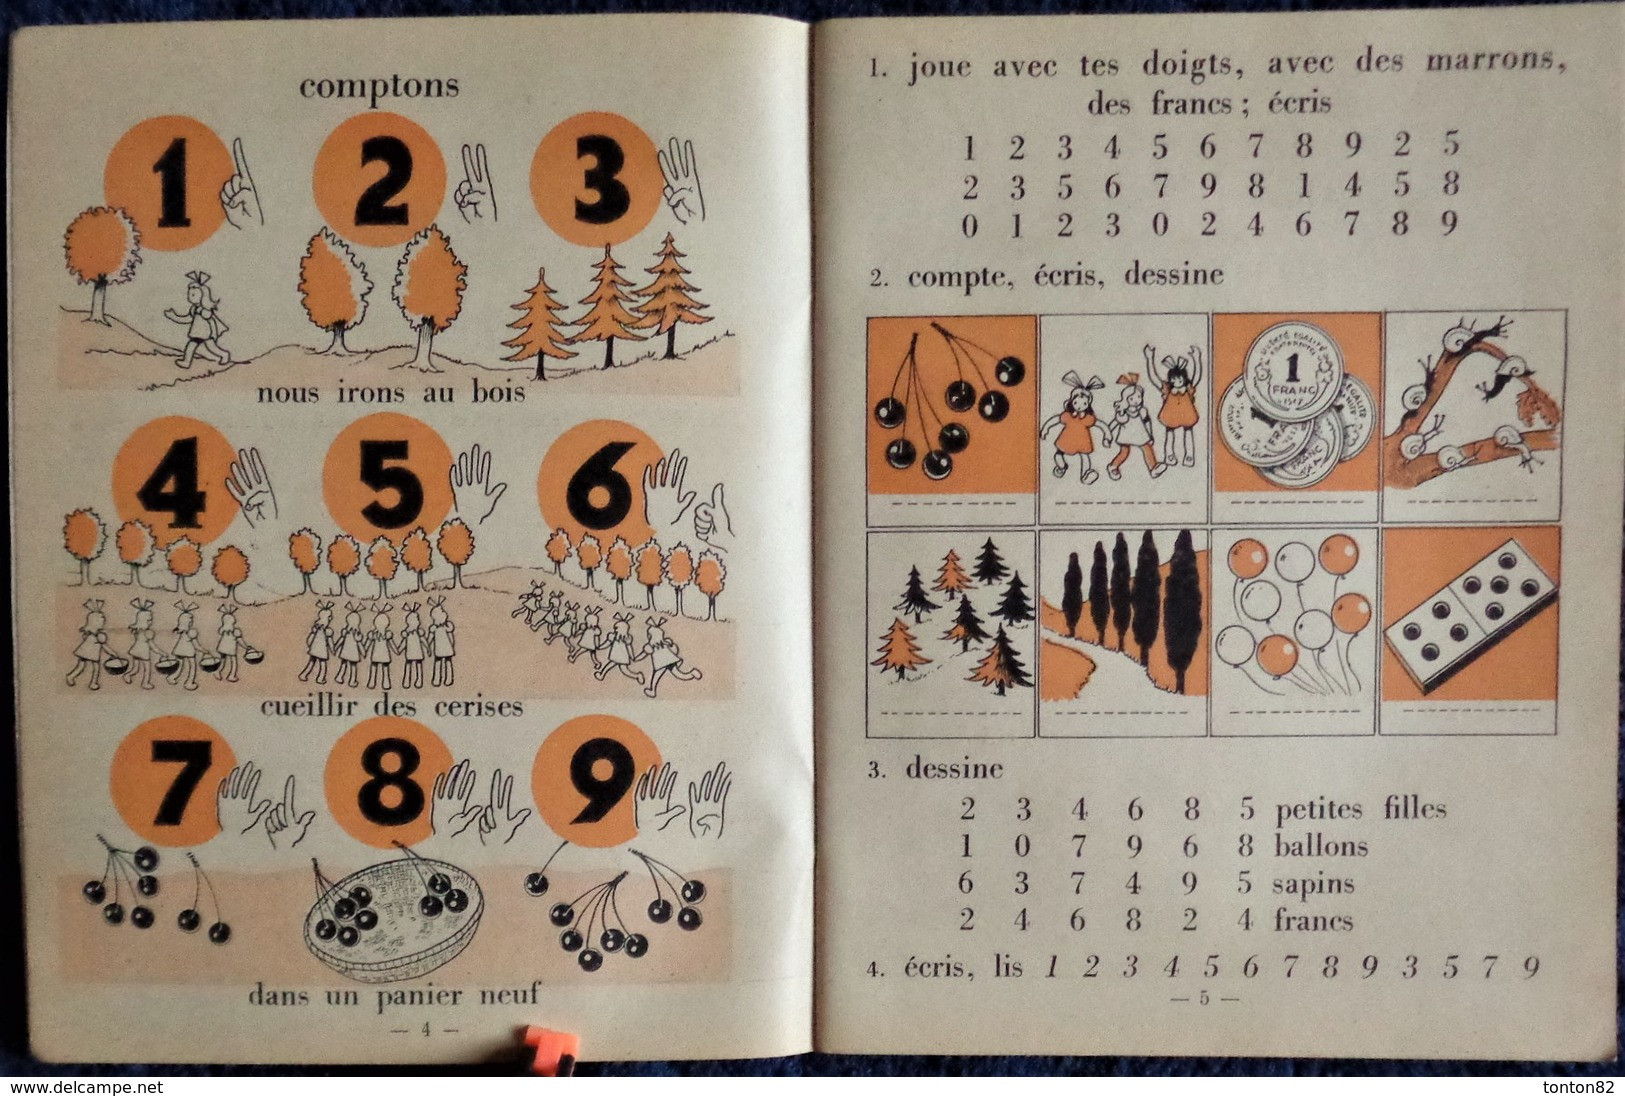 U. Coux - M.M. Deyres - Pour Compter Comme Les Grands - 1er Livre De Calcul - Charles-Lavauzelle & Cie, éditeurs - 1950 - 0-6 Years Old